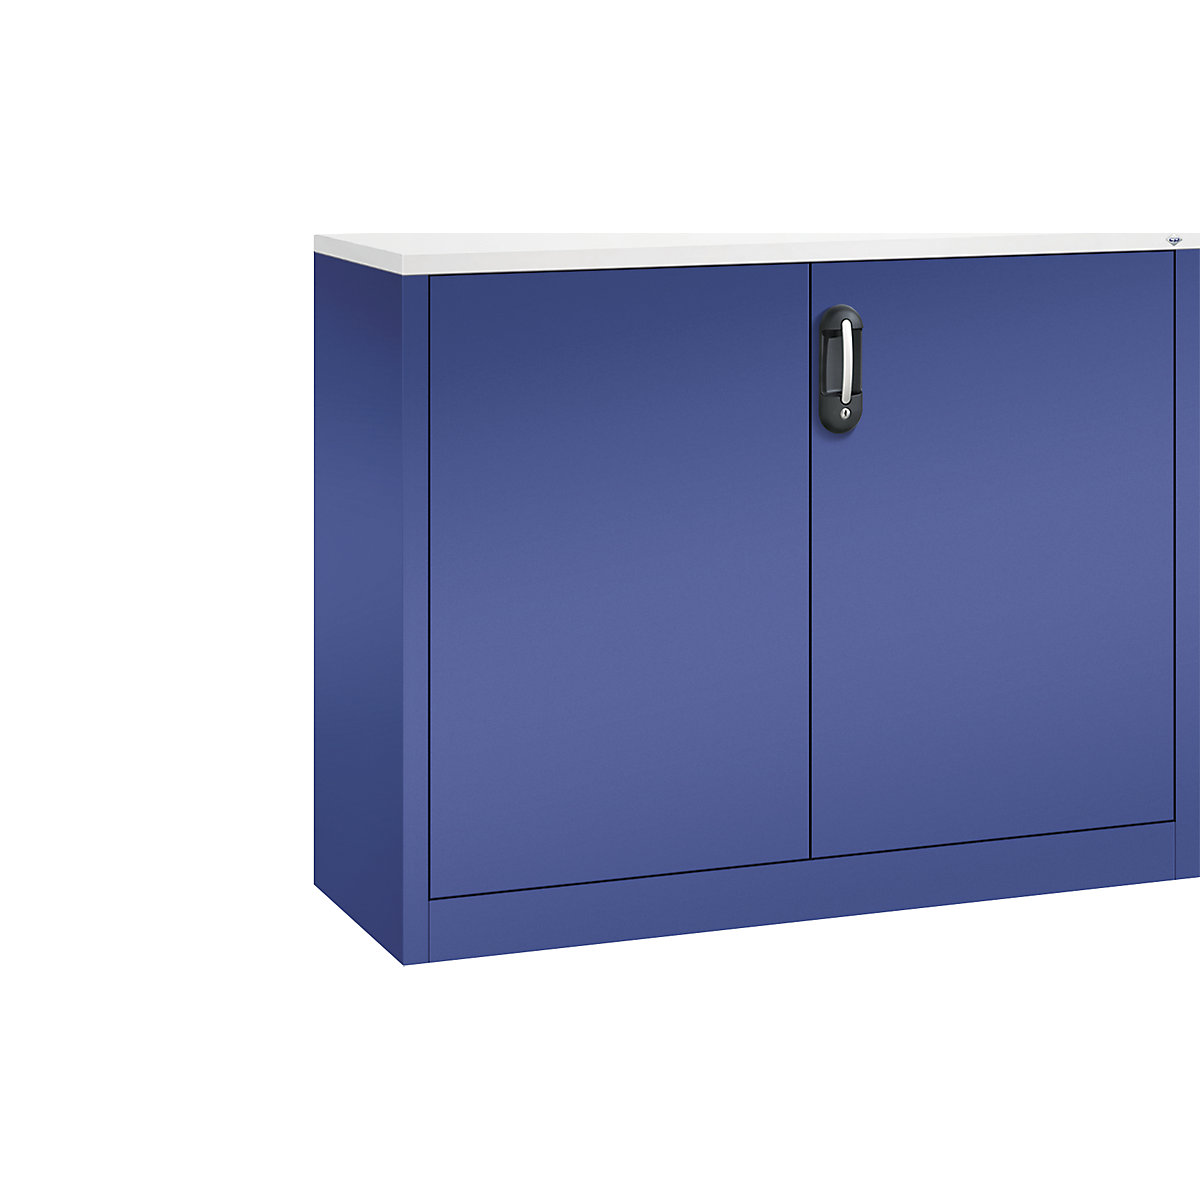 Niska komoda za dokumente ACURADO – C+P, 2 visine za registratore, VxŠxD 1000 x 1200 x 400 mm, u tamno plavoj / tamno plavoj boji